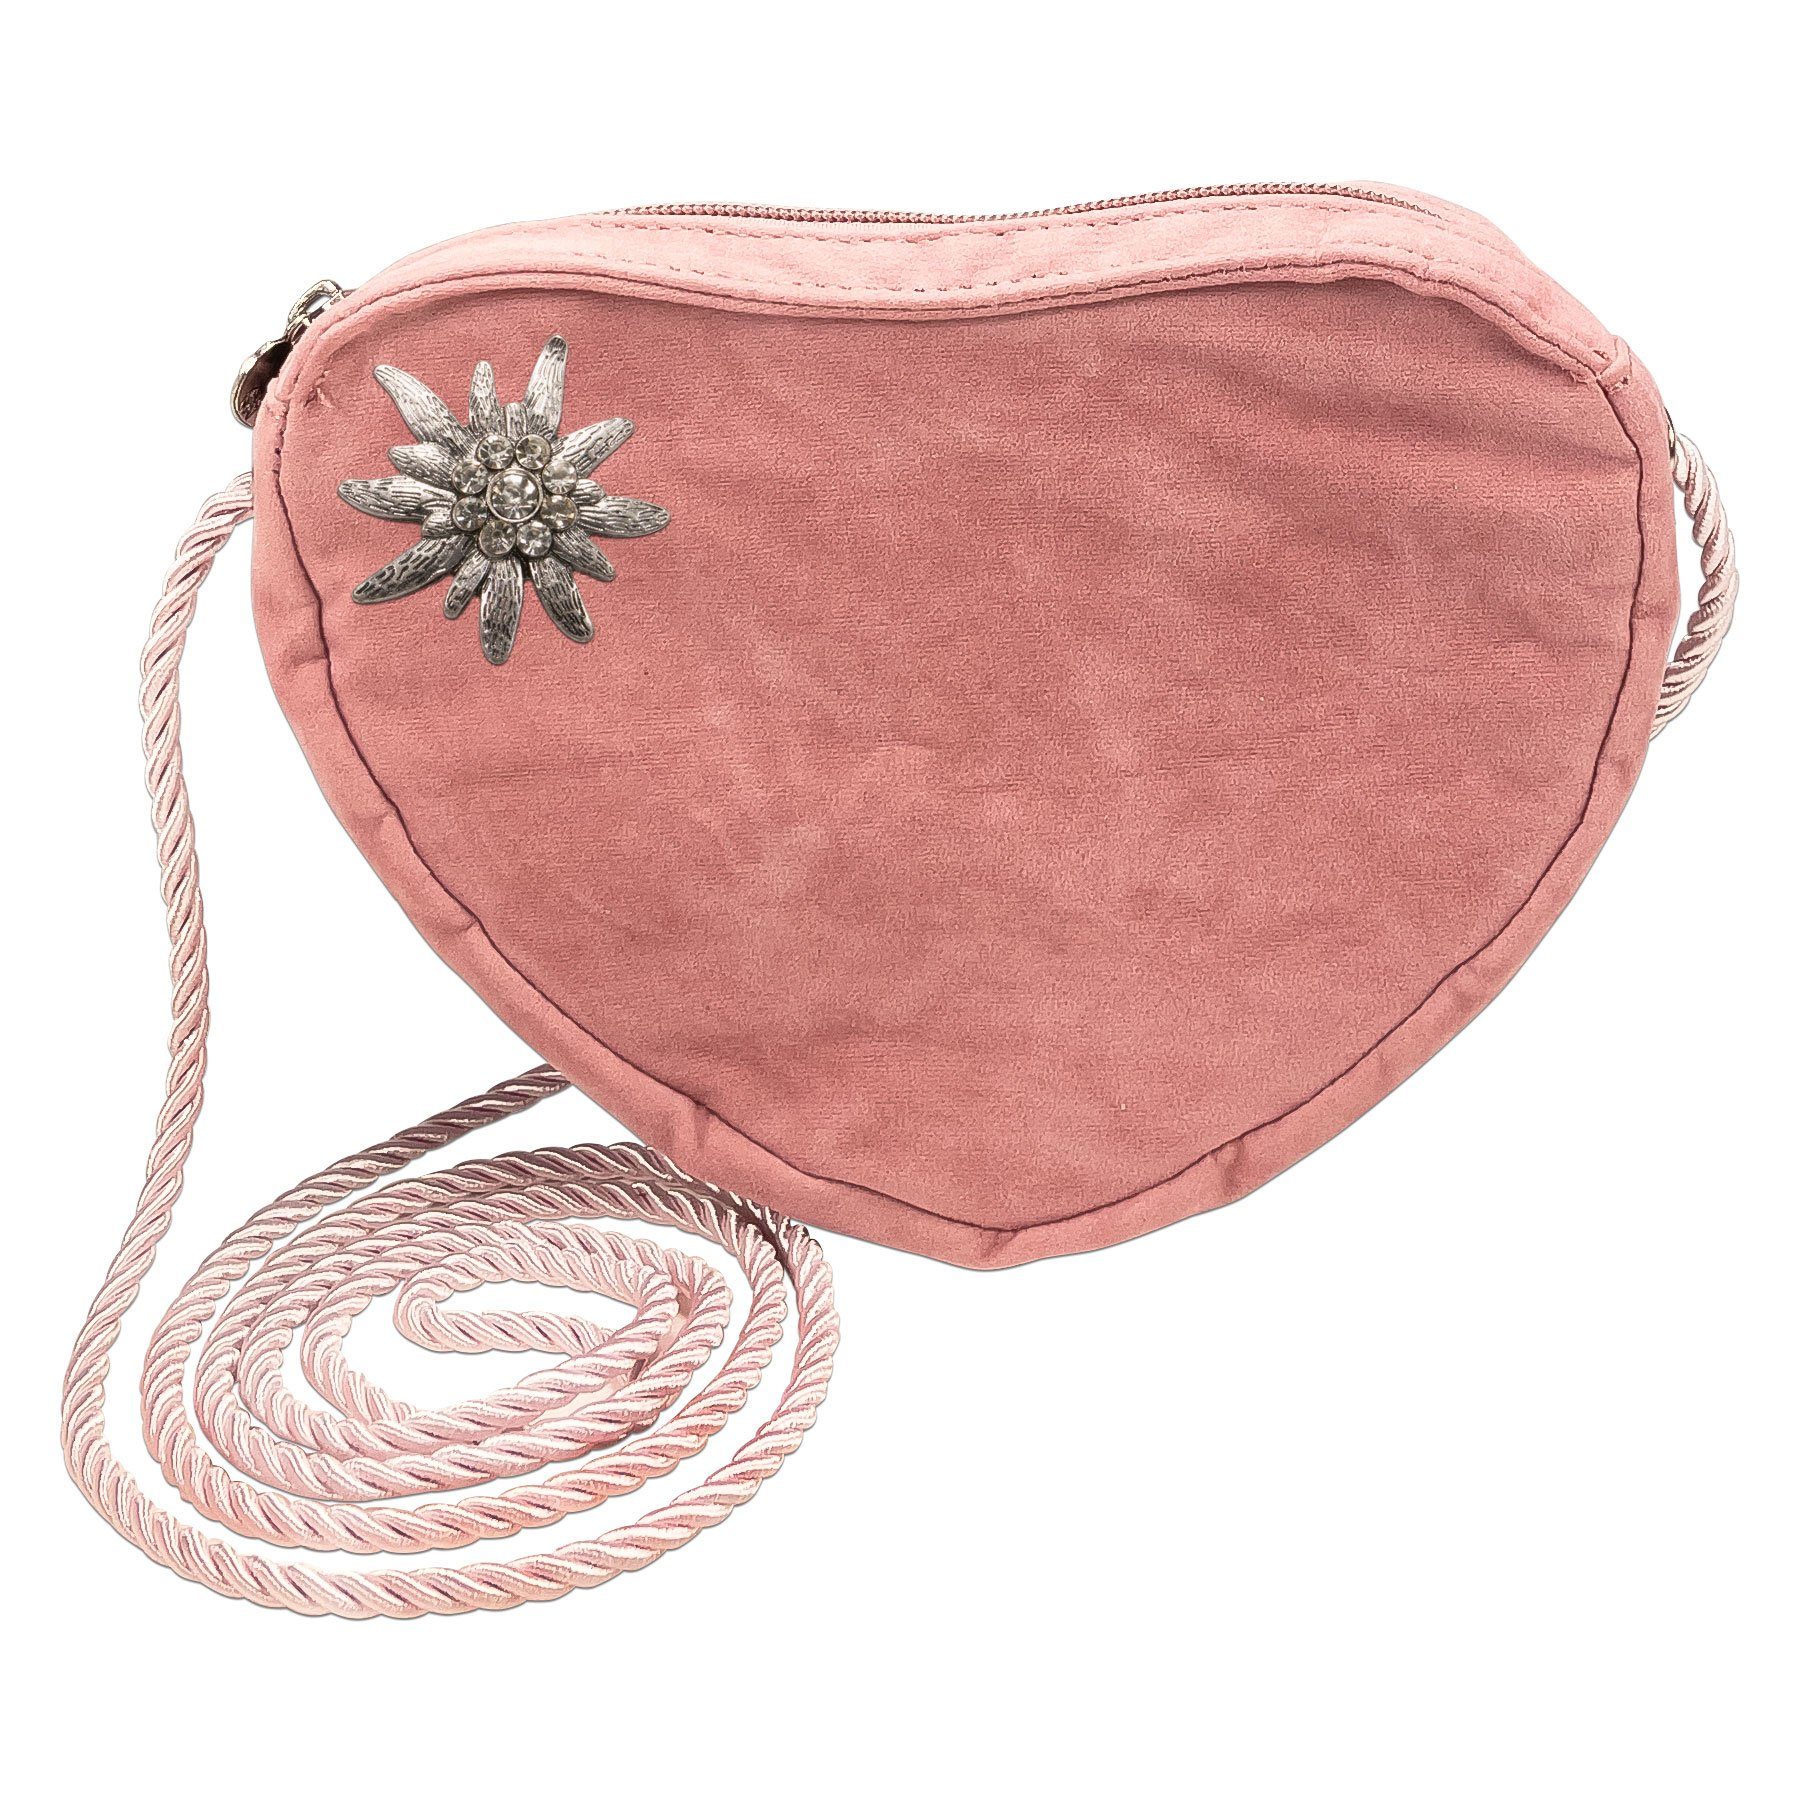 Alpenflüstern Schultertasche Herztasche Strass-Edelweiß (rosa-ros), - Damen Trachtentasche in Herzform, Schultertasche fürs Dirndl, Herz Handtasche zur Tracht, Dirndltasche